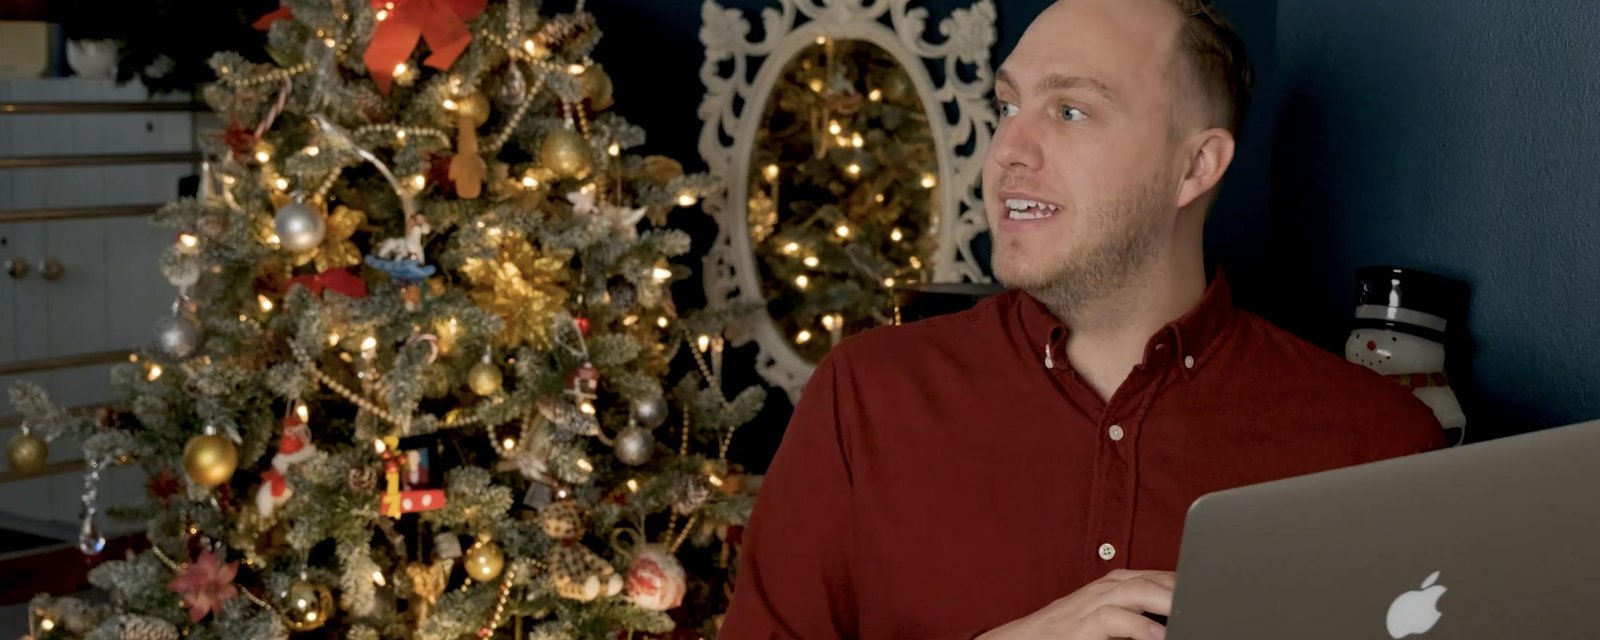 À VOIR: L'humoriste Alex Lapointe publie la plus drôle des vidéos sur les fêtes de Noël en temps de COVID